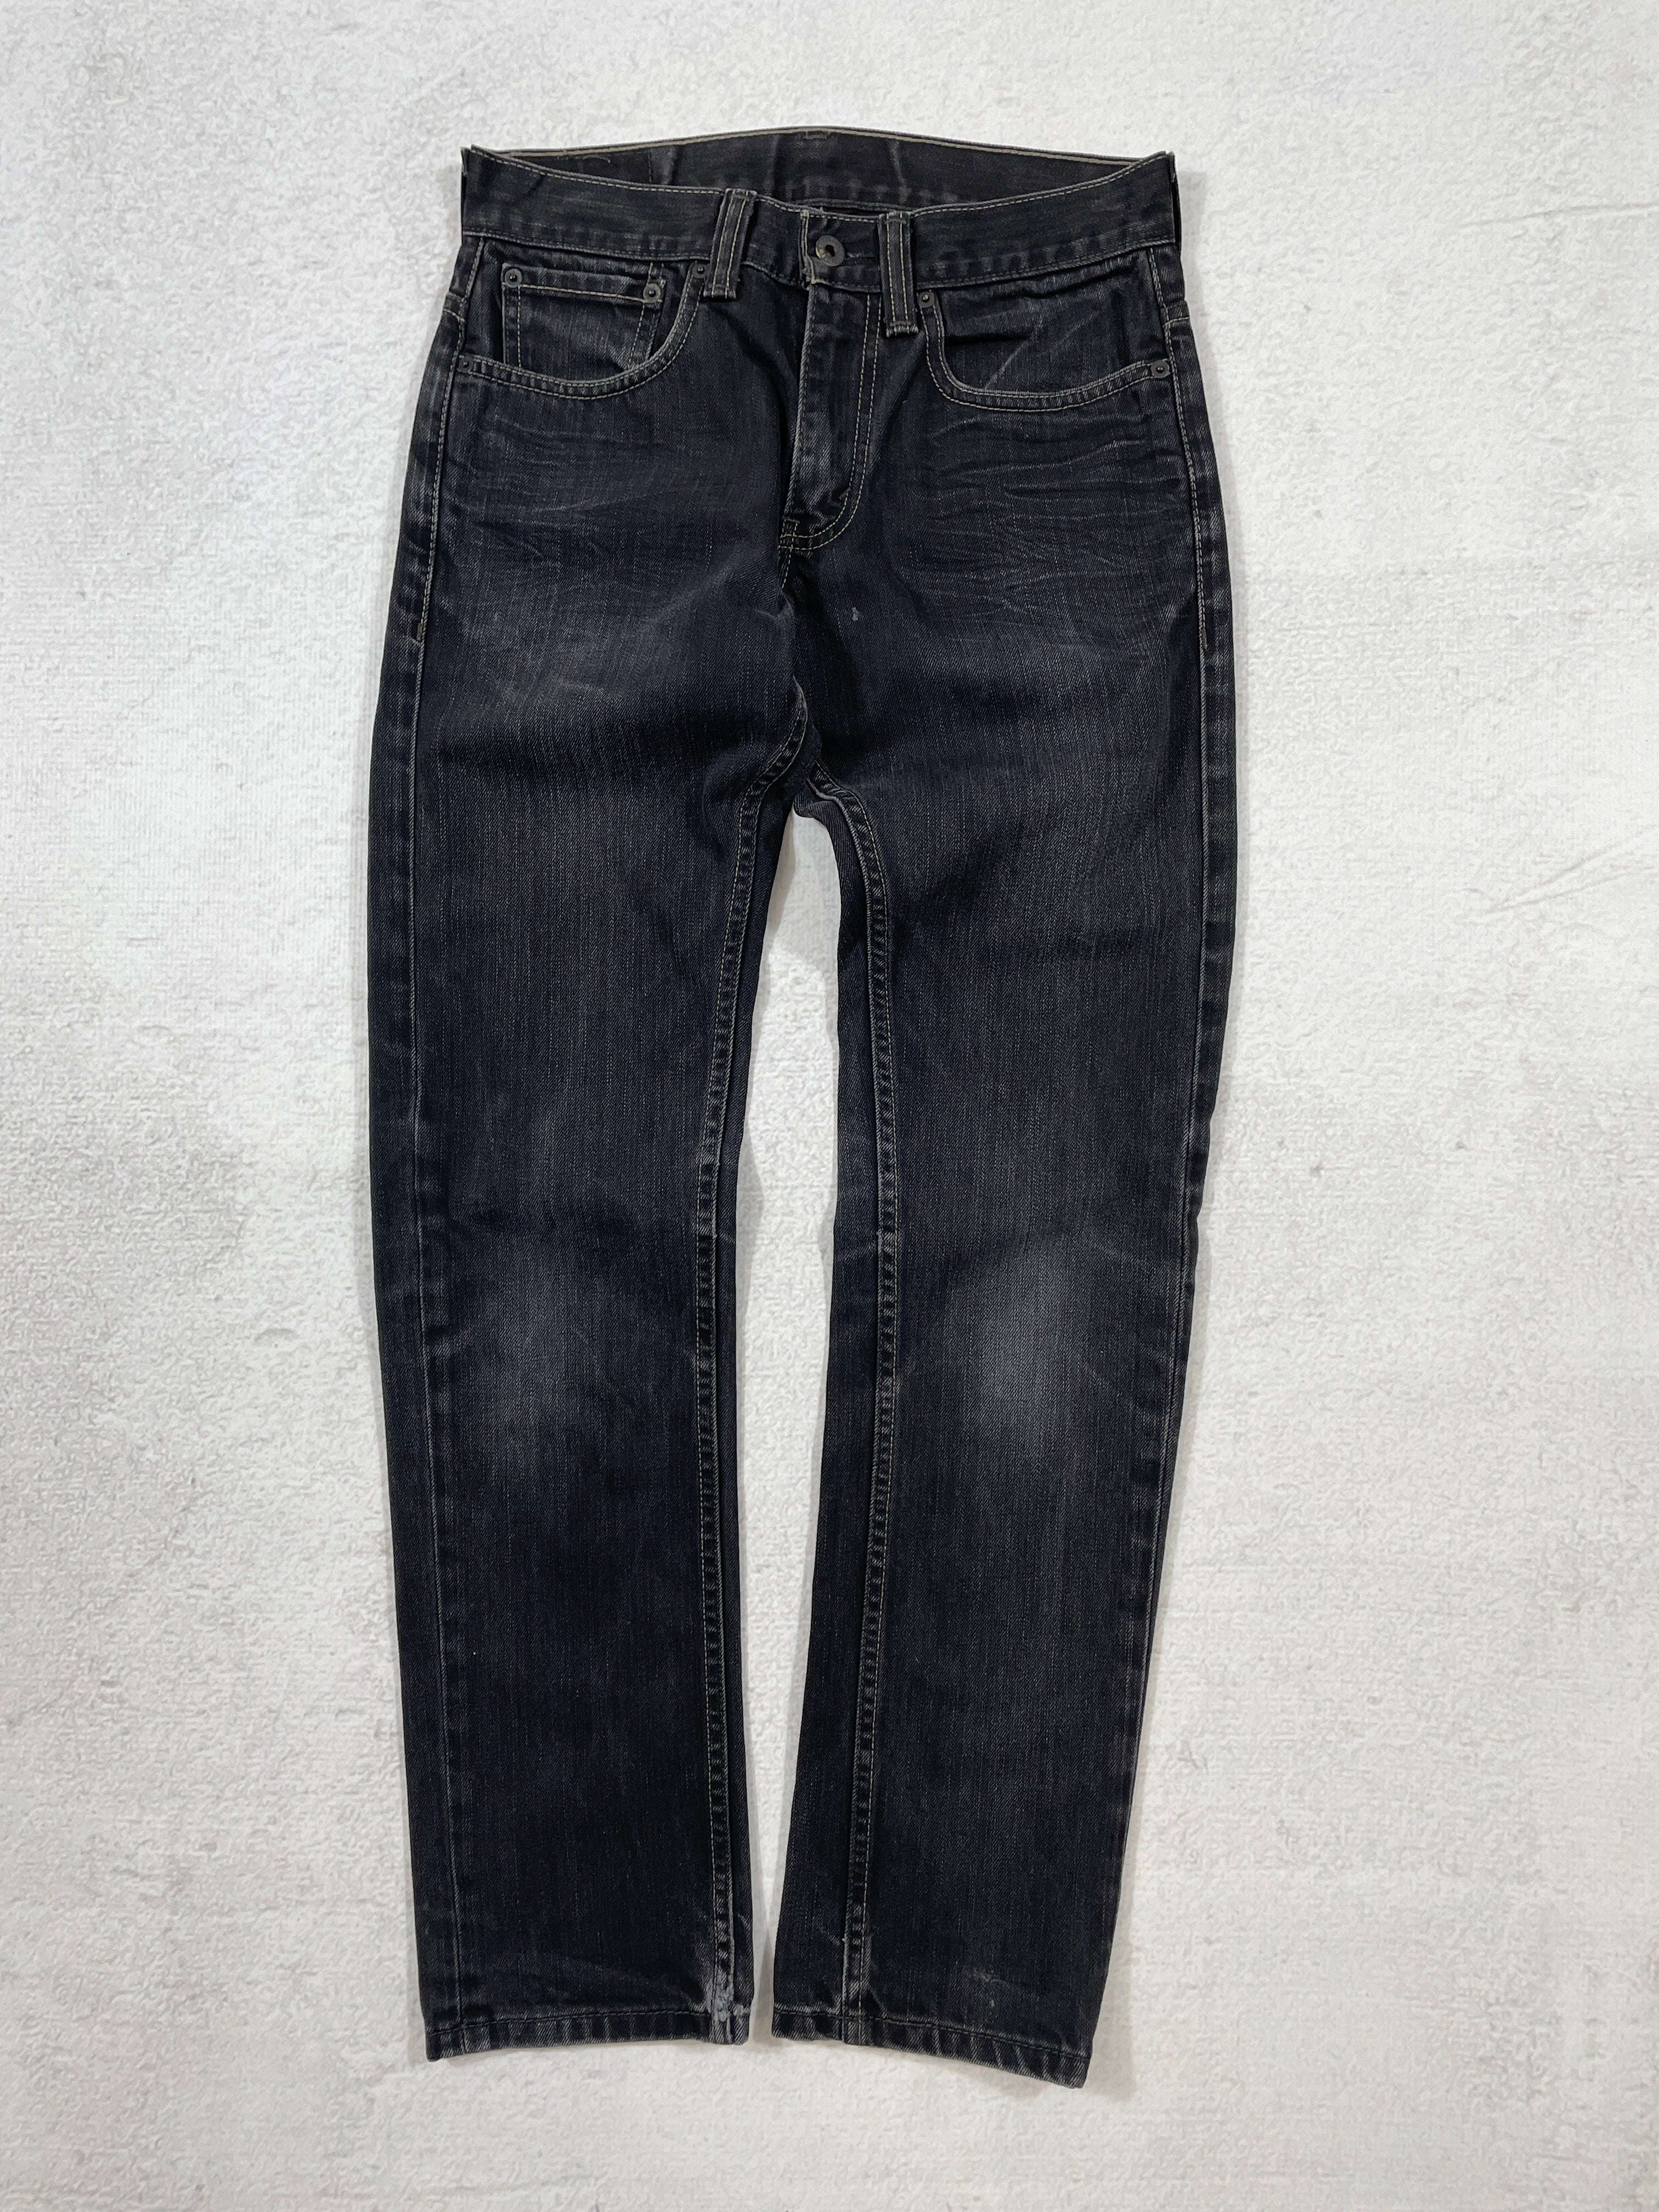 Vintage Levis 511 Jeans - Women's 31Wx32L